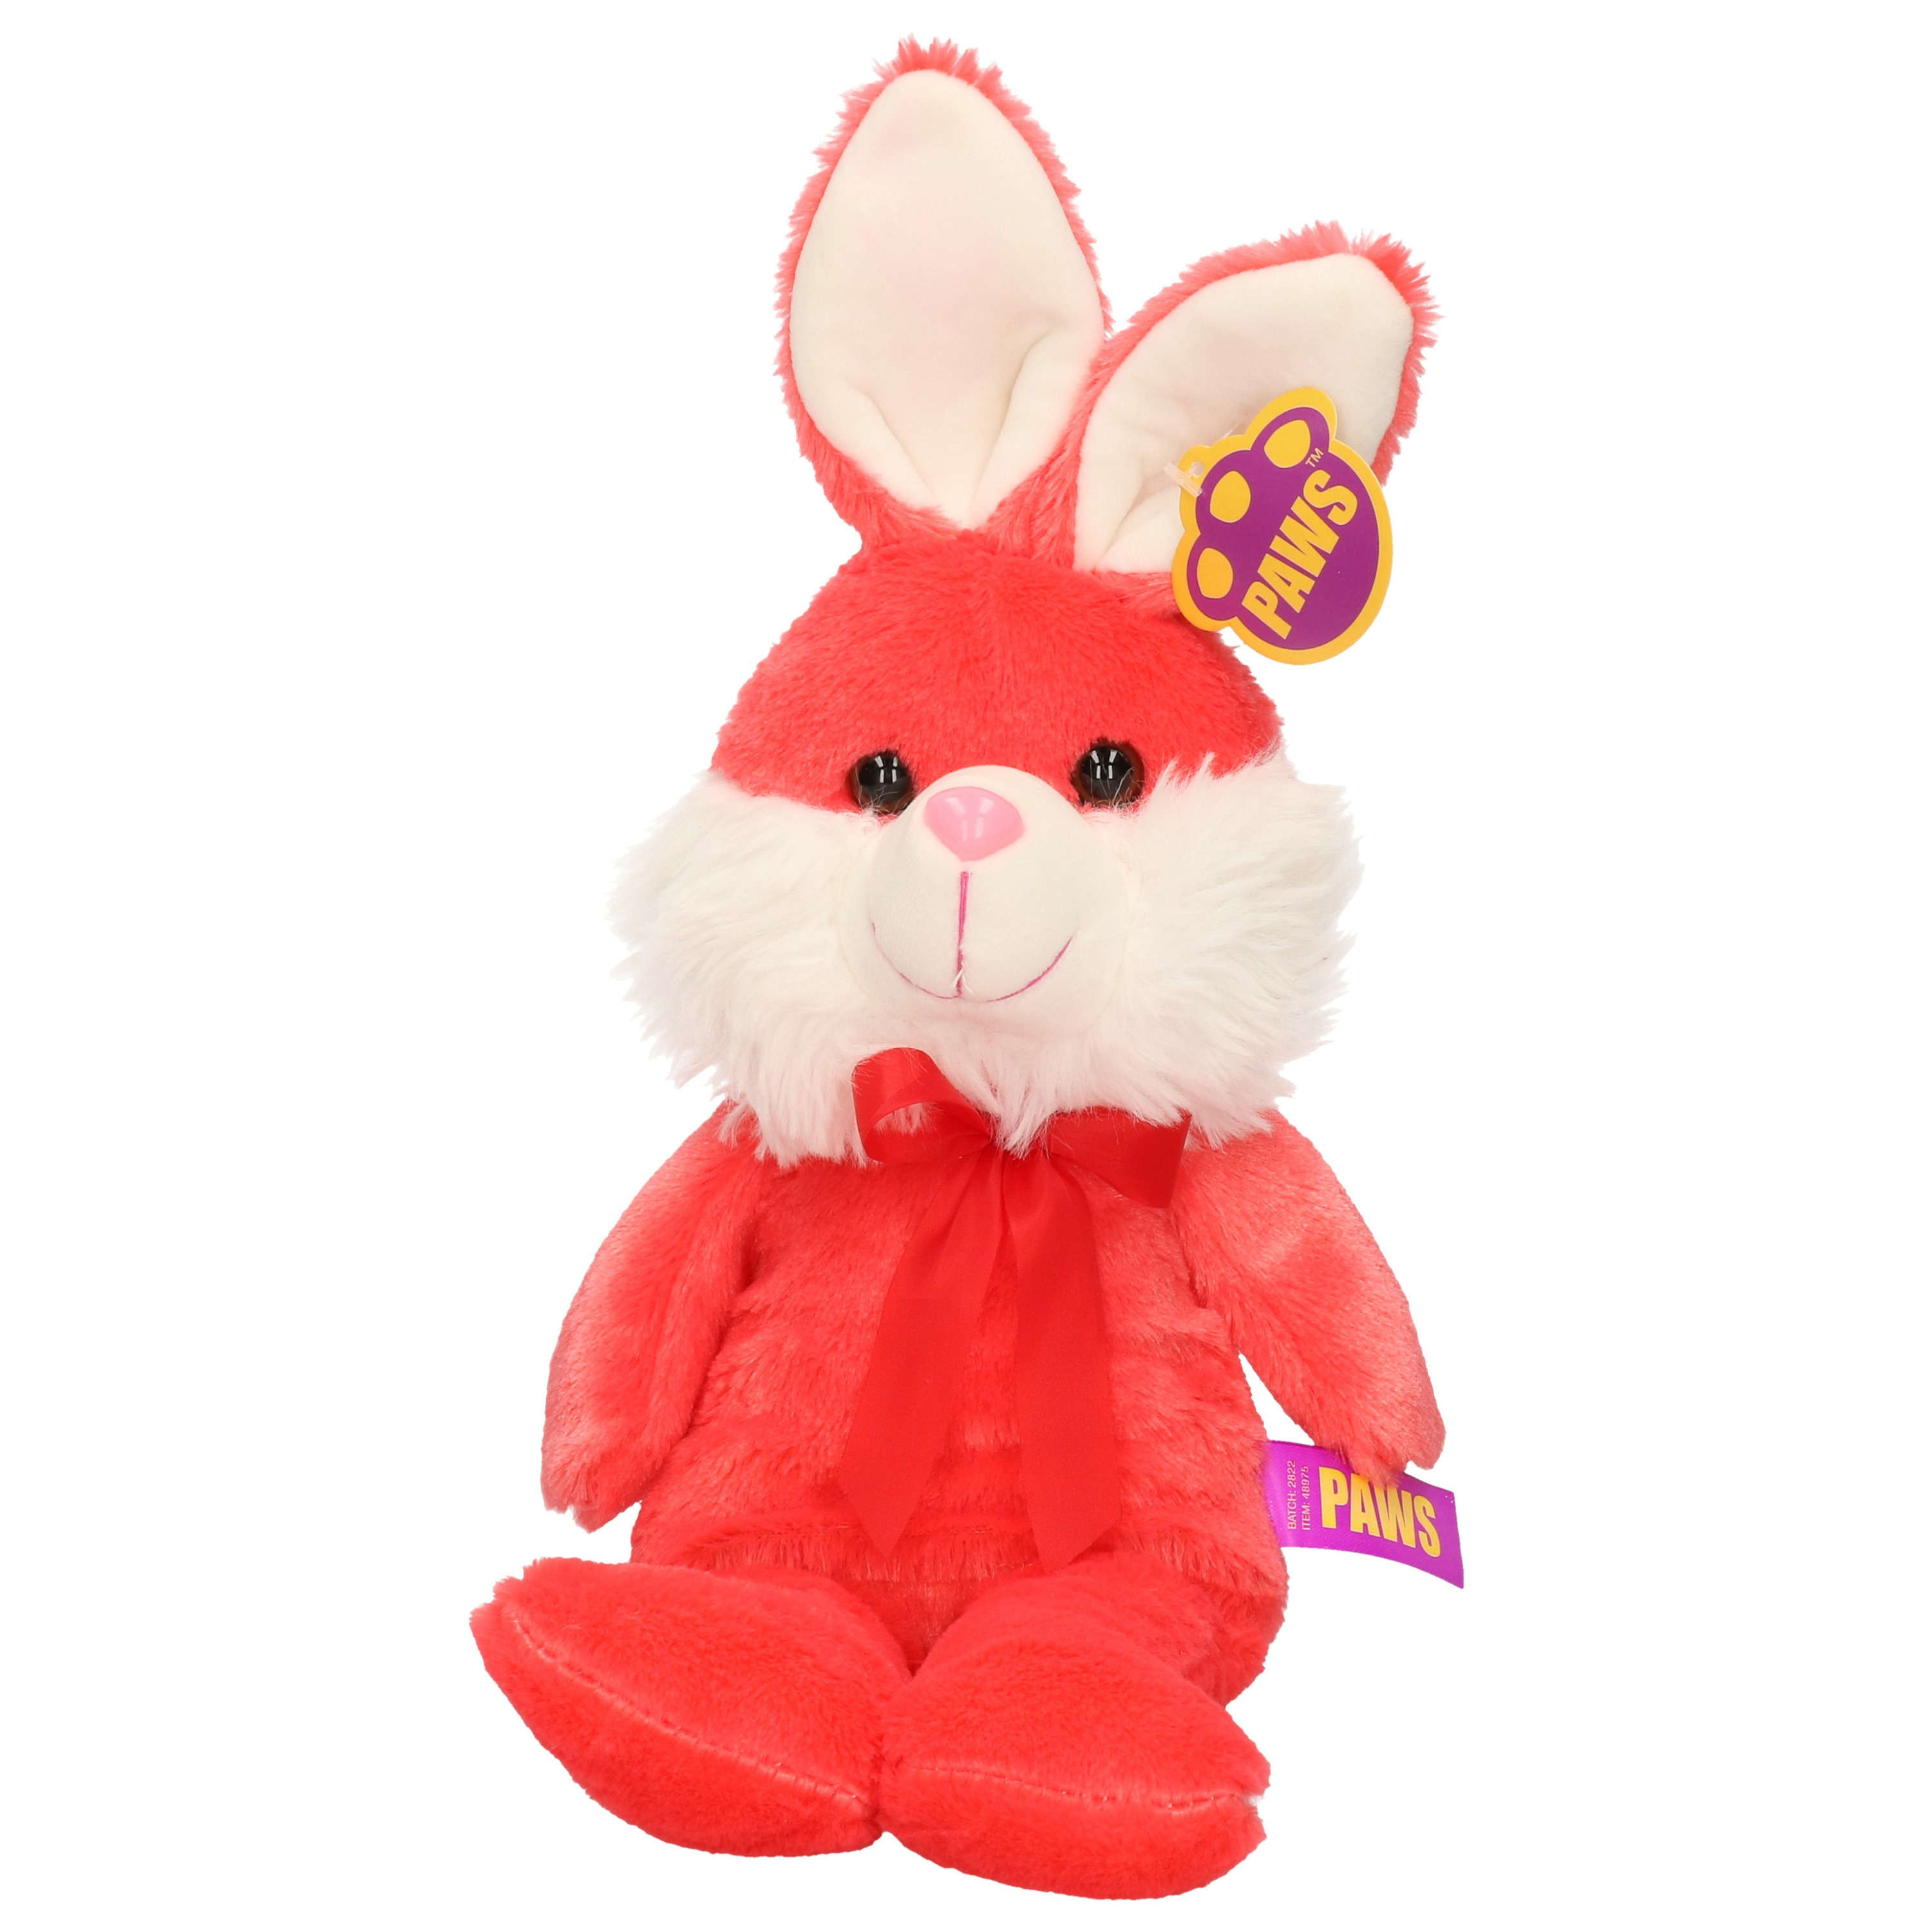 Paashaas-haas-konijn knuffel dier zachte pluche rood cadeau 32 cm met strikje